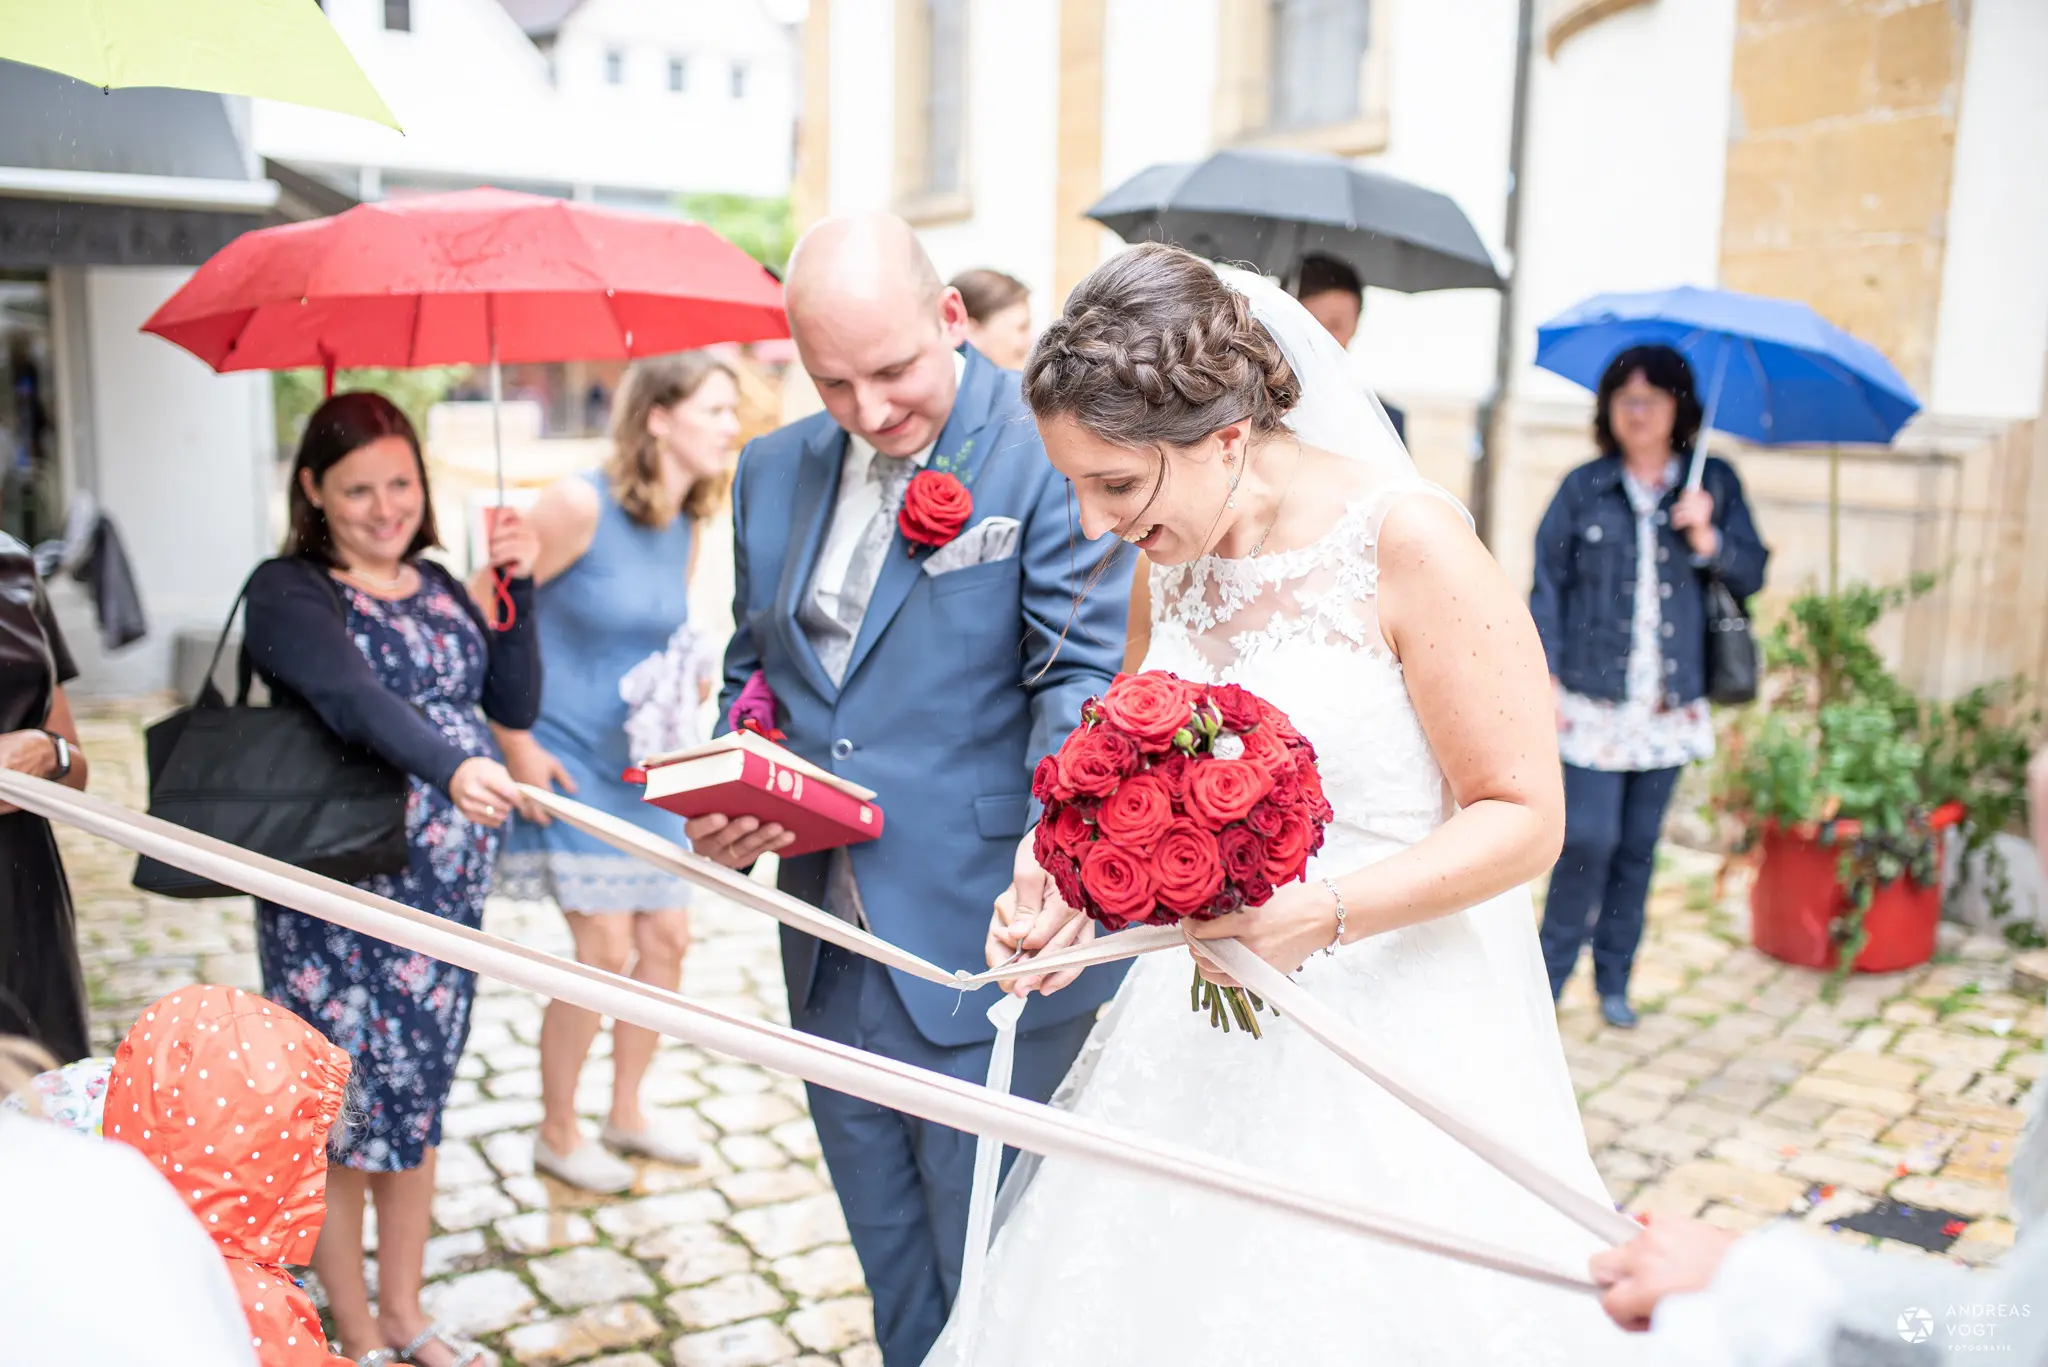 Hochzeit bei Regen in Aalen in der Innenstadt. Sektempfang mit Regenschirm